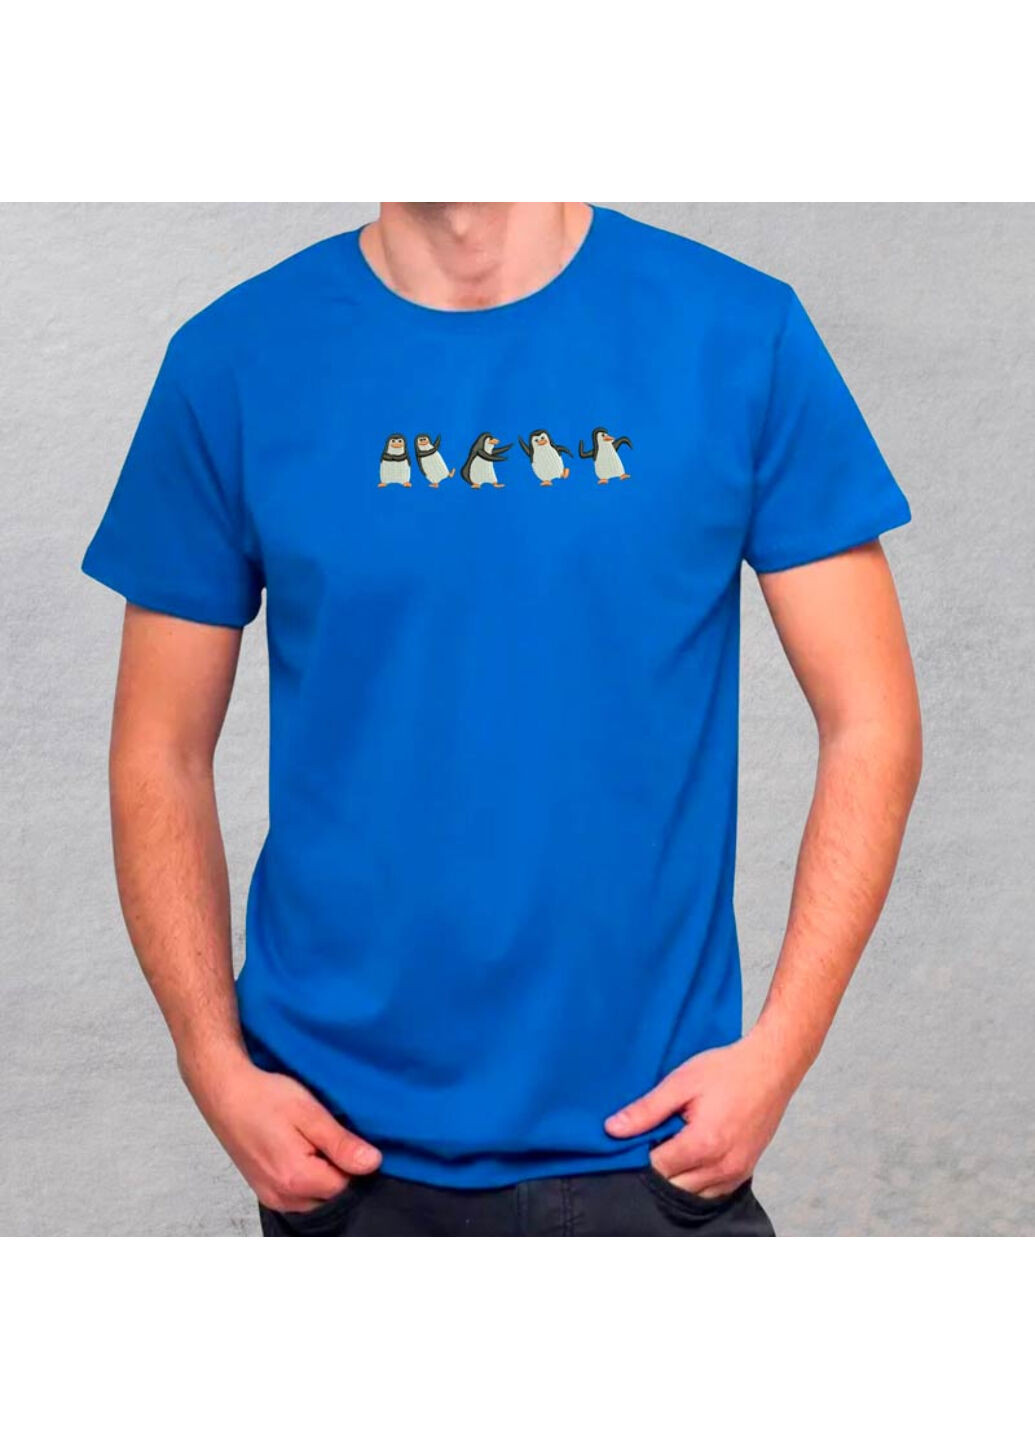 Синяя футболка с вышивкой пингвинов 01-3 мужская синий 3xl No Brand